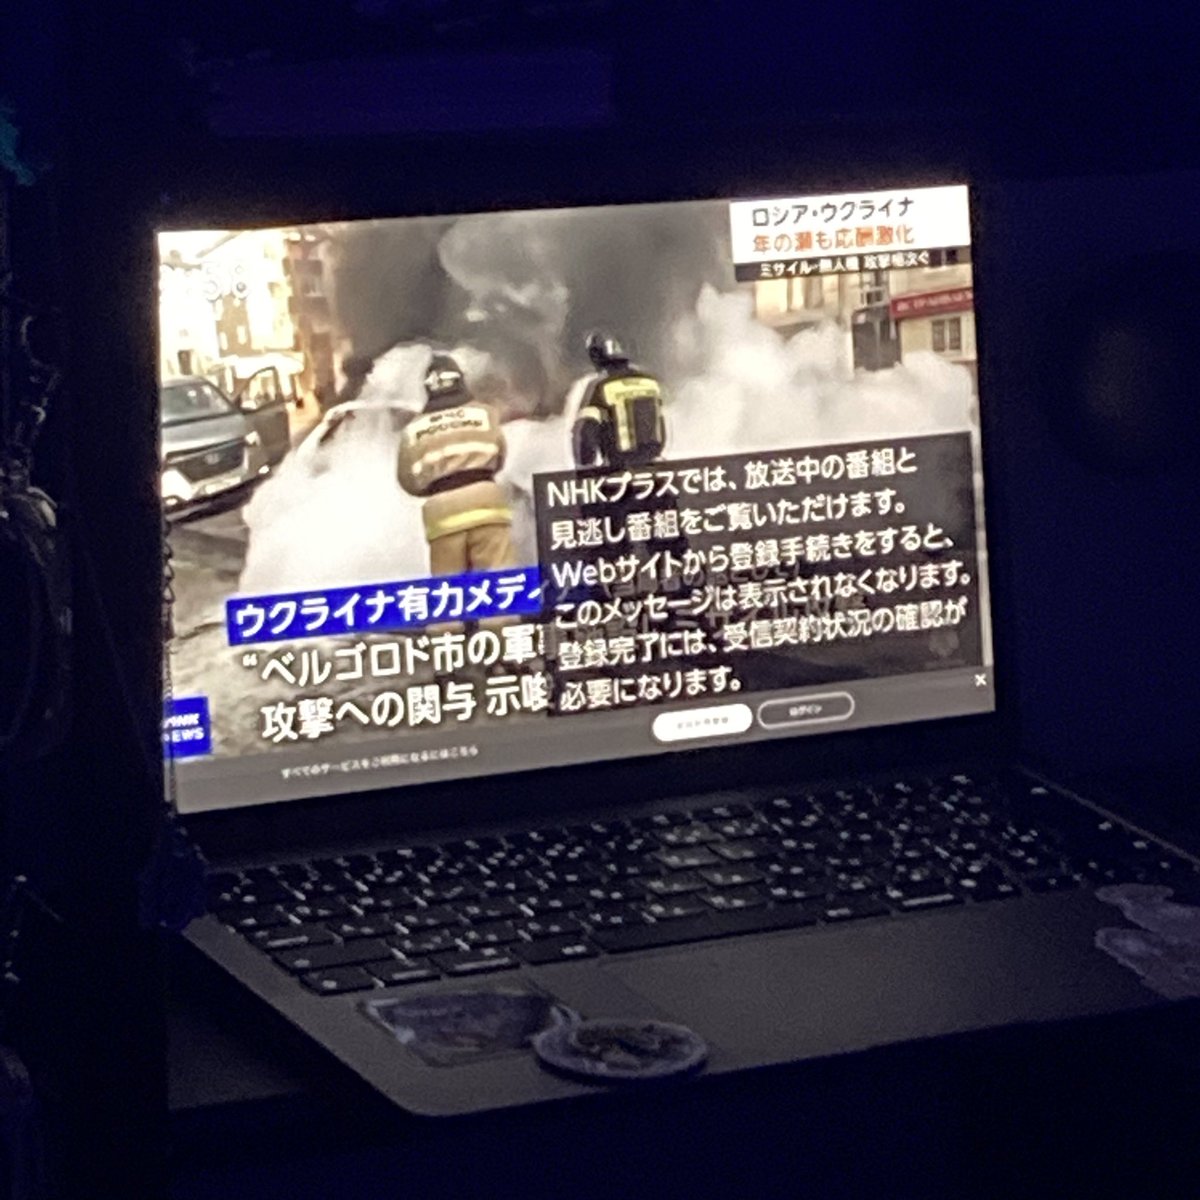 Японці в проміжках між новорічними концертами пускають новини про Україну❤️ Шоу 紅白歌合戦🎤